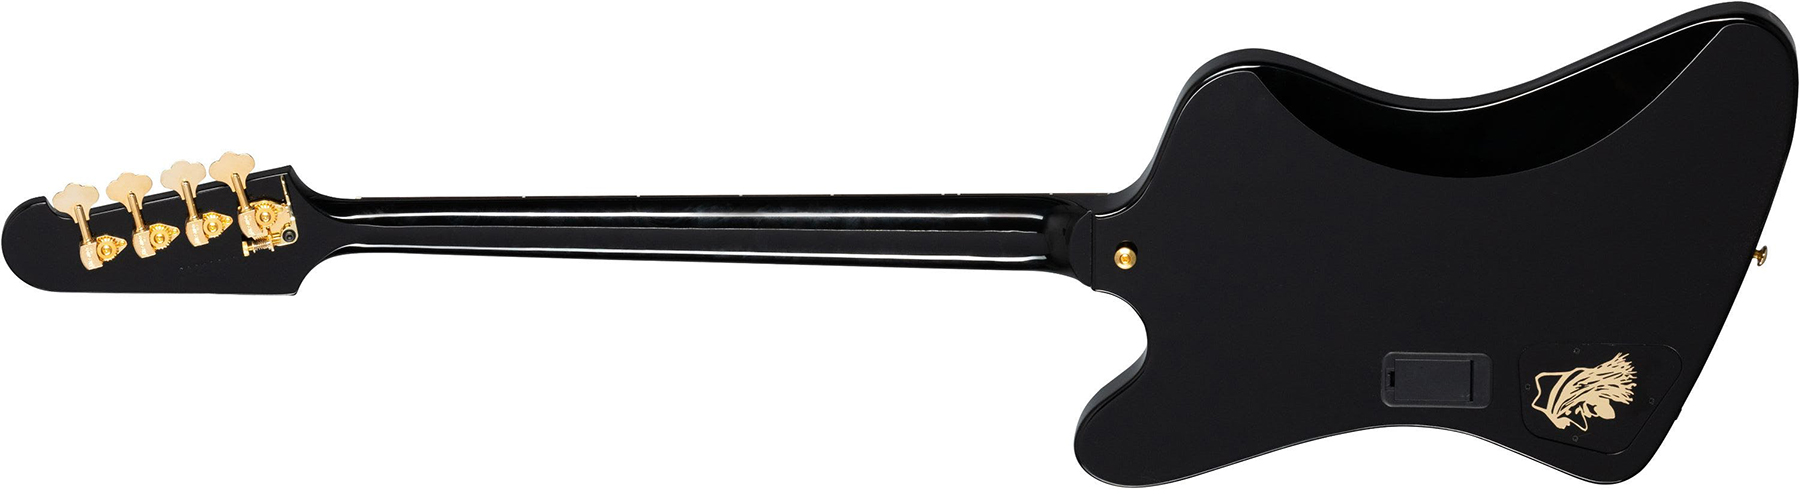 Gibson Rex Brown Thunderbird Signature Active Rw - Ebony - Bajo eléctrico de cuerpo sólido - Variation 1